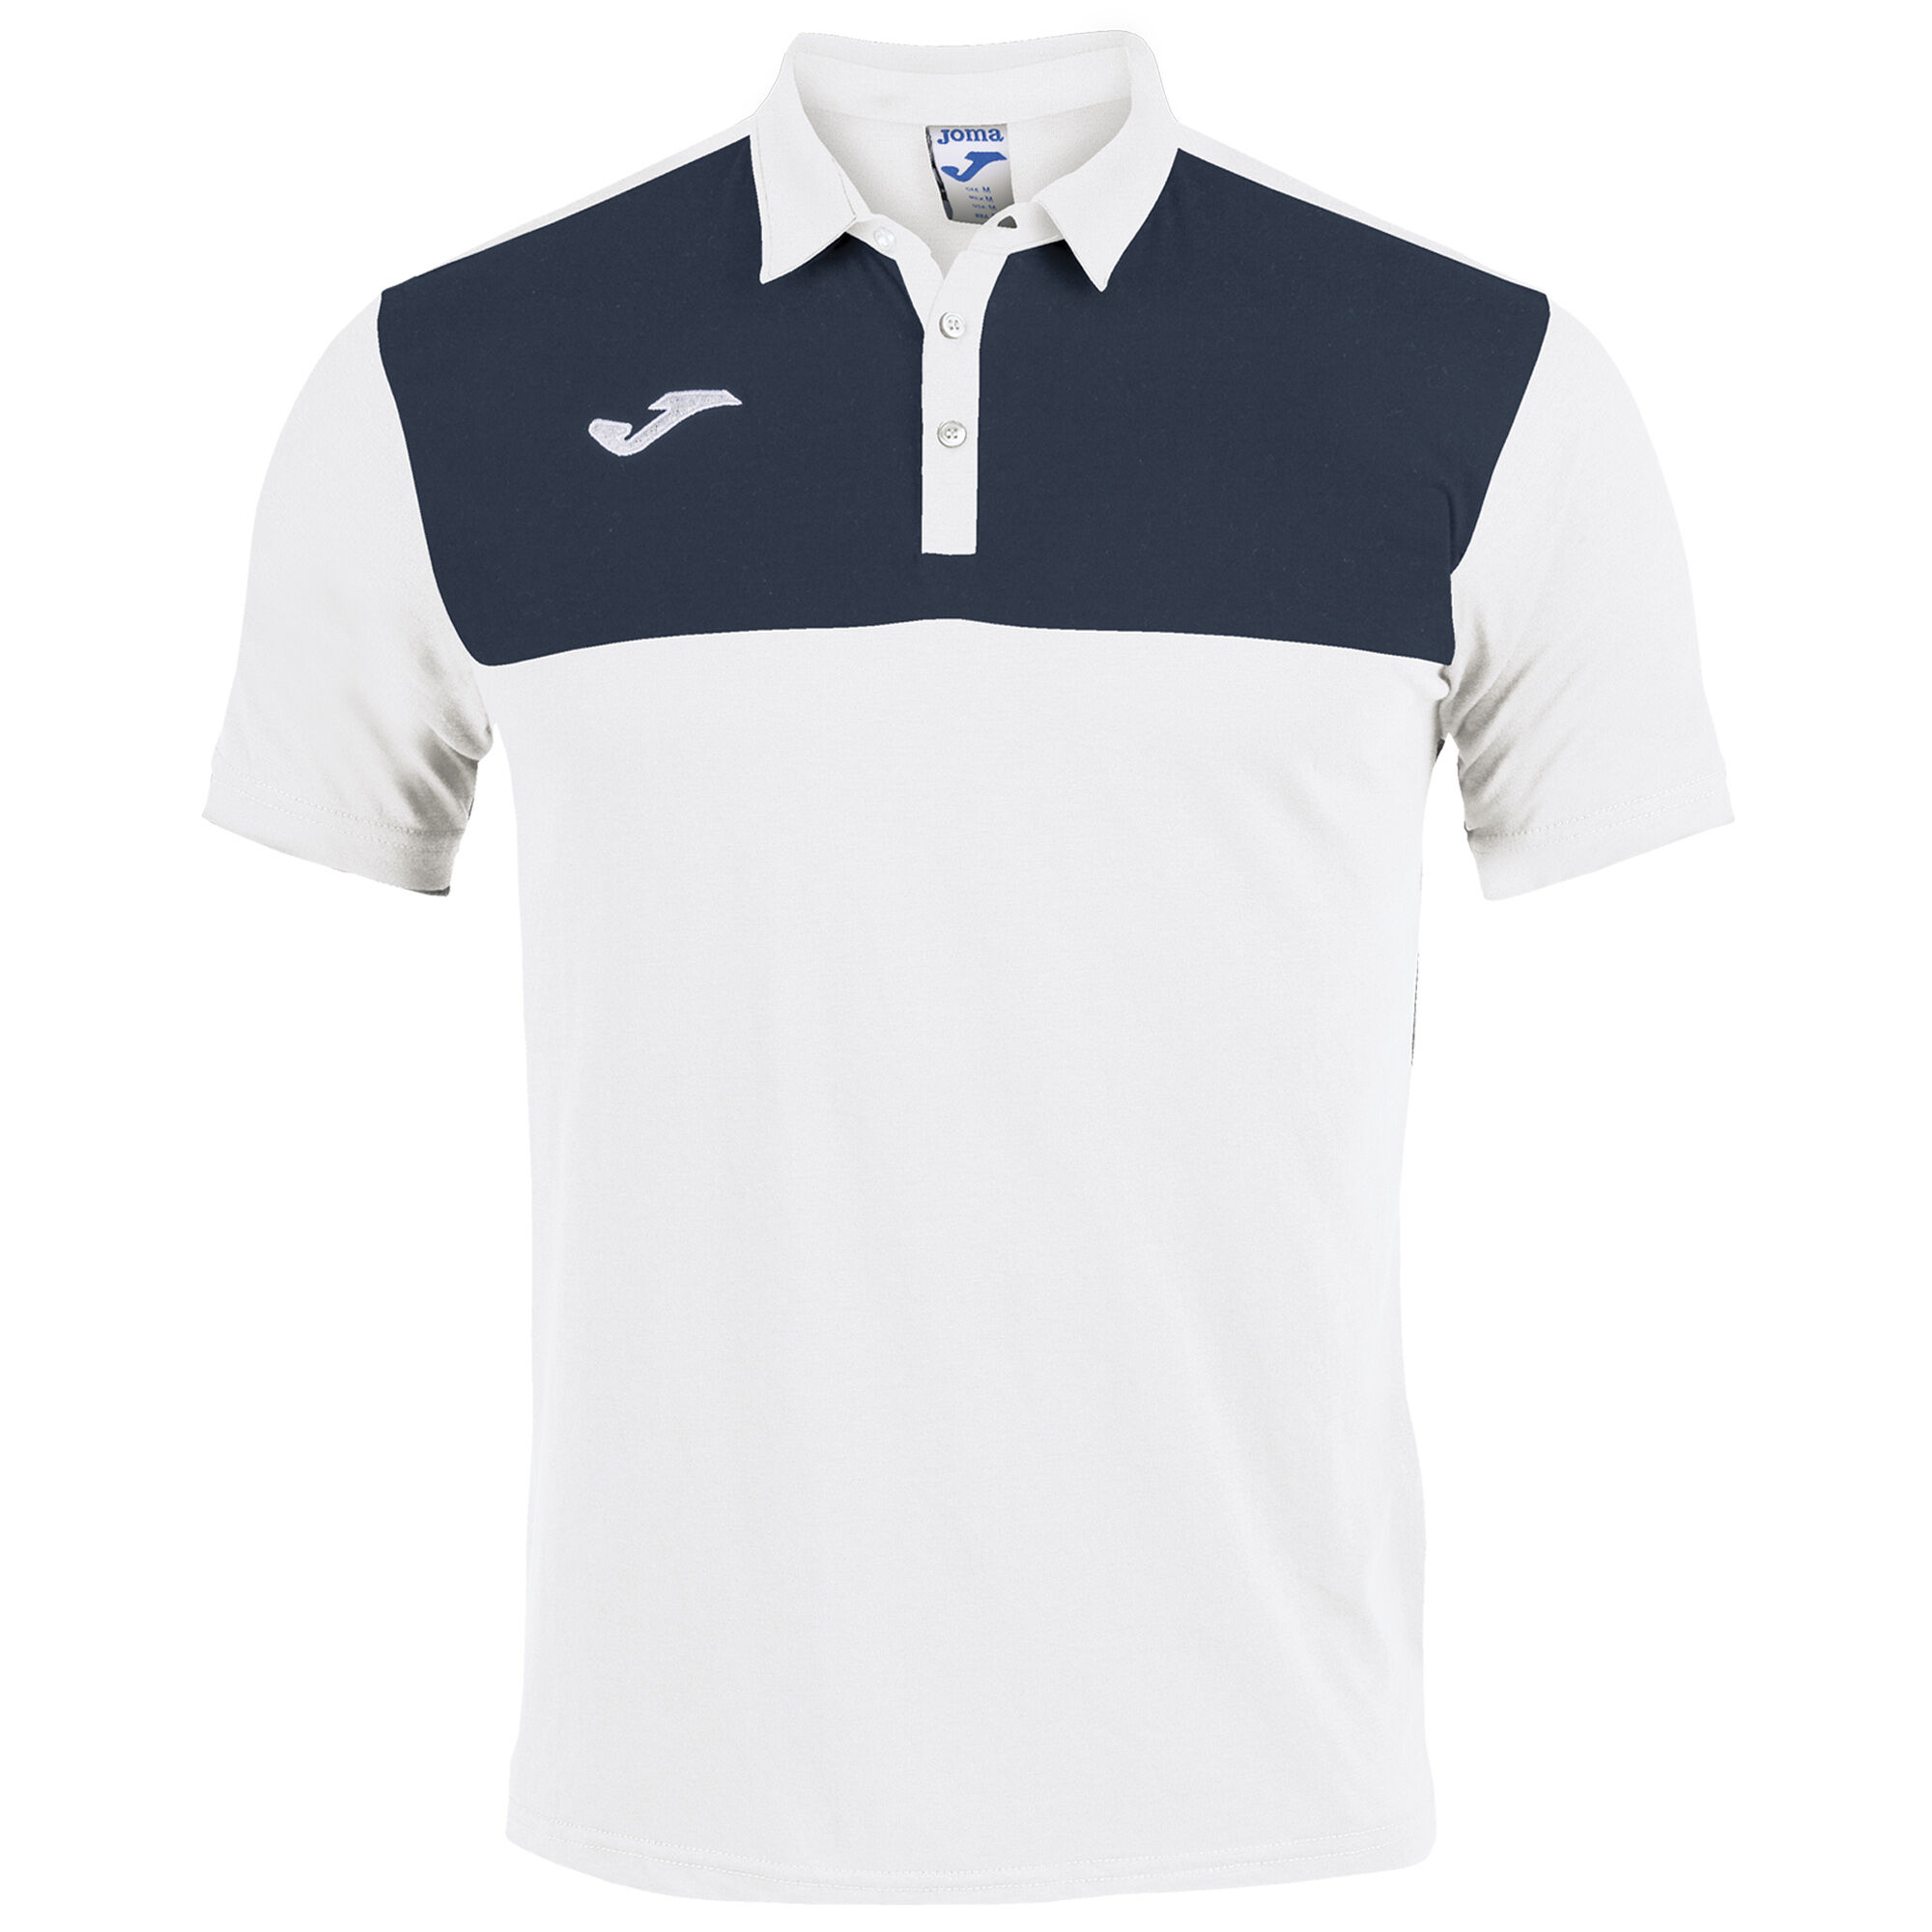 Polo shirt short-sleeve man Winner white navy blue